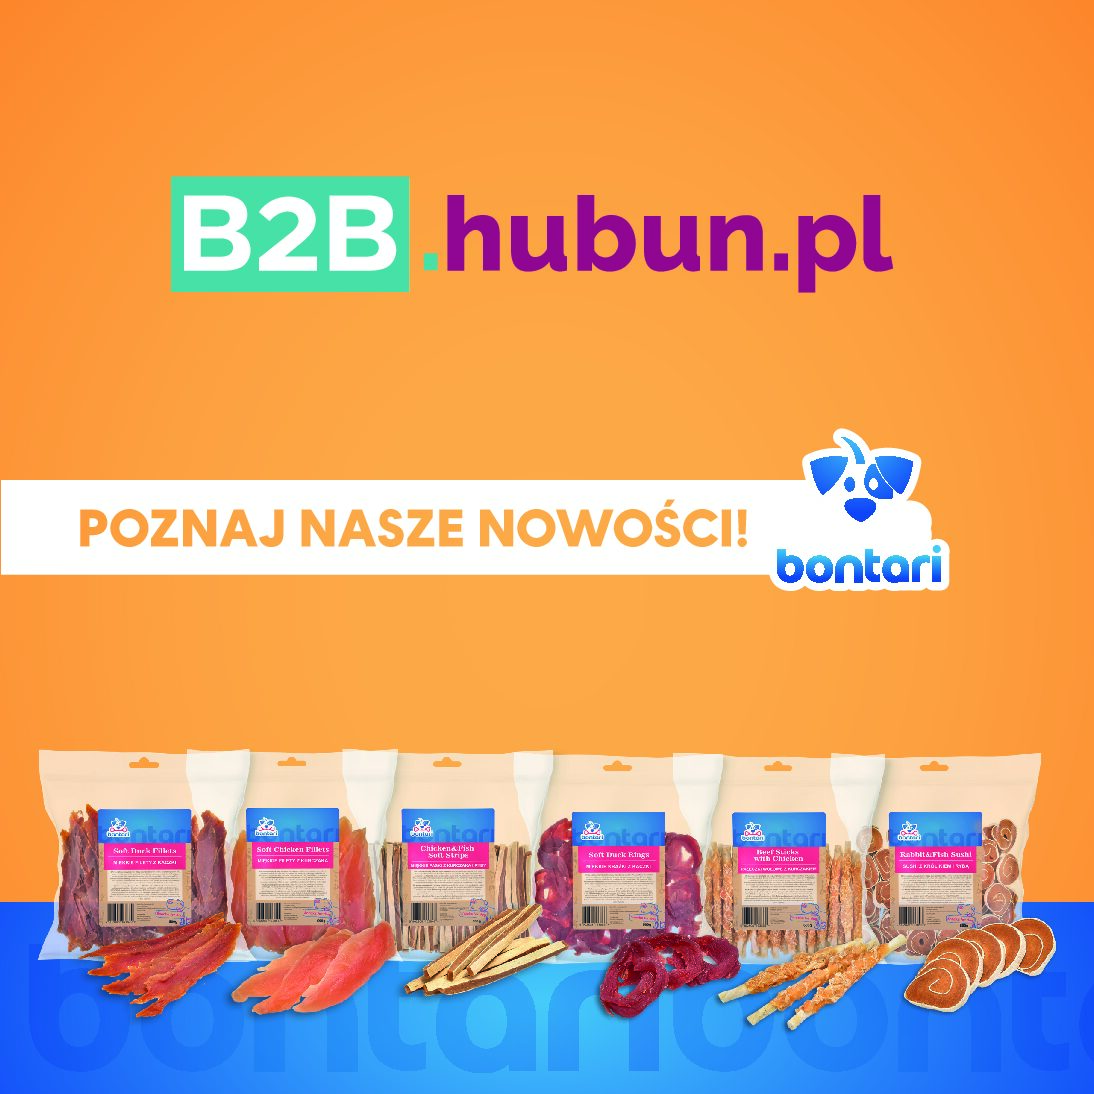 B2B.hubun.pl rozszerza ofertę produktową!